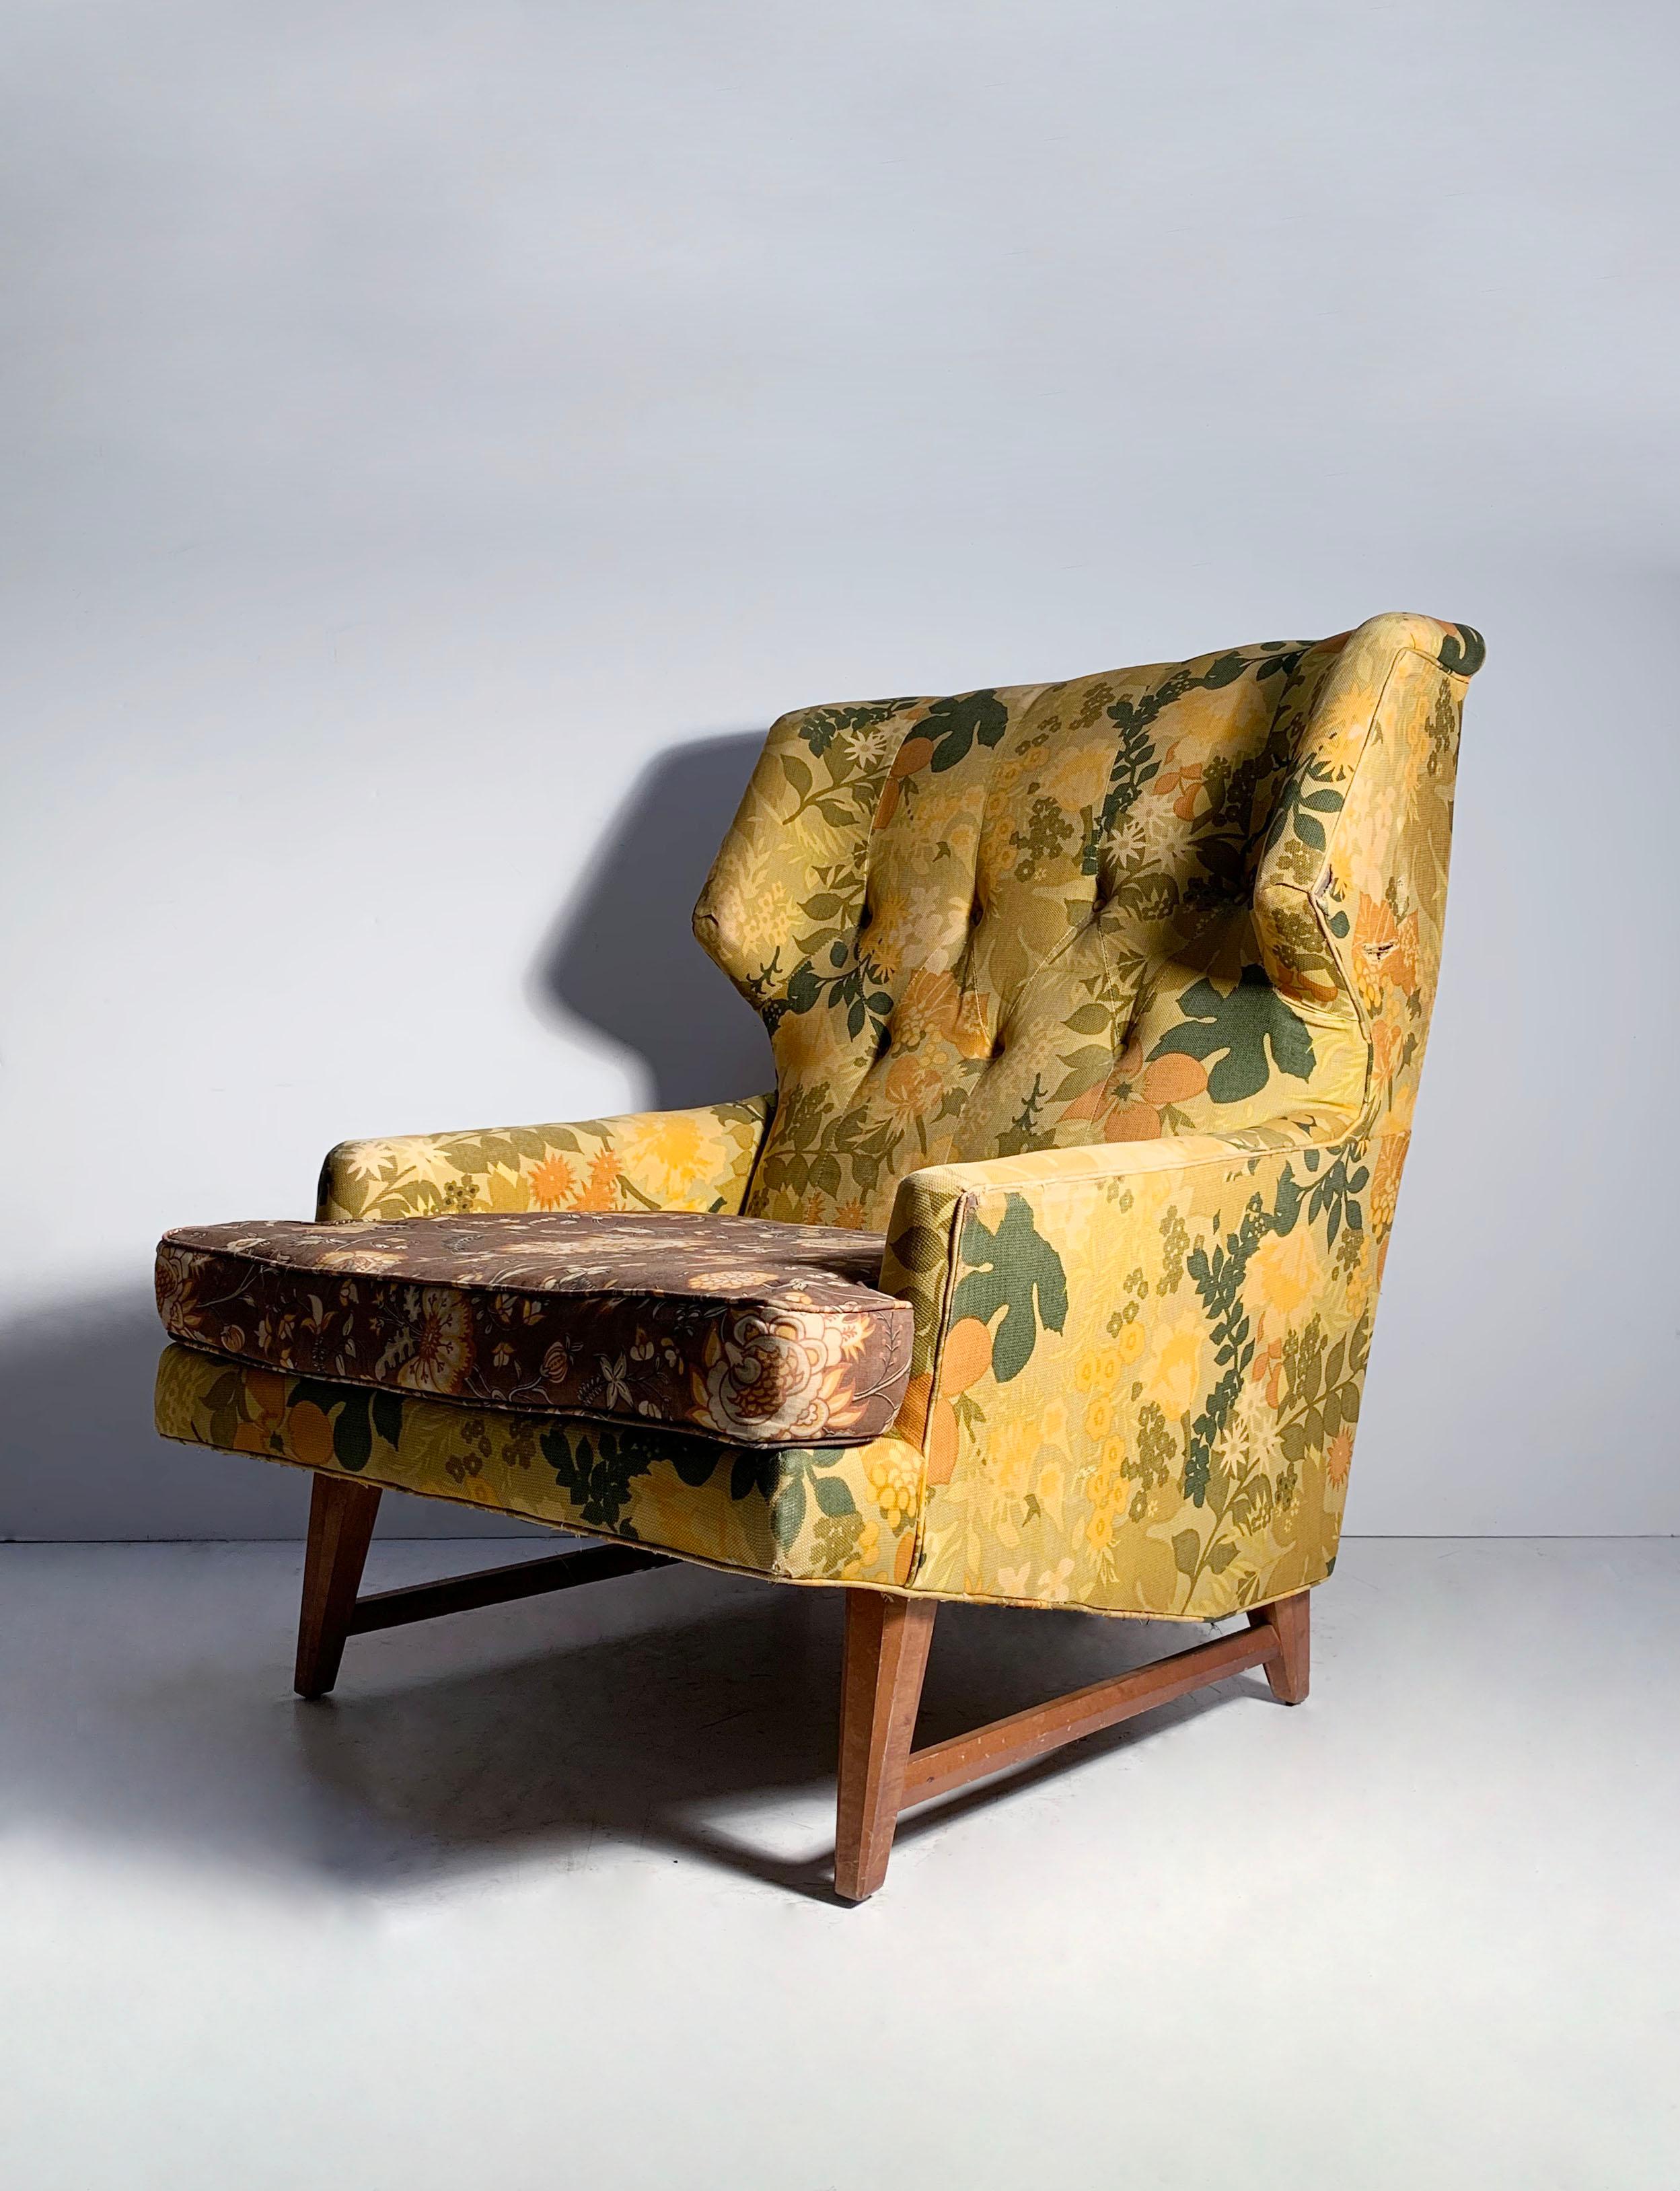 Sehr elegantes, dramatisches Paar Vintage-Loungesessel, die Edward Wormley zugeschrieben werden. Unmarkiert. Ich würde vermuten, dass diese Stuhlform von Edward Wormley für Heritage-Henredon entworfen wurde. Heritage-Henredon arbeitete mit